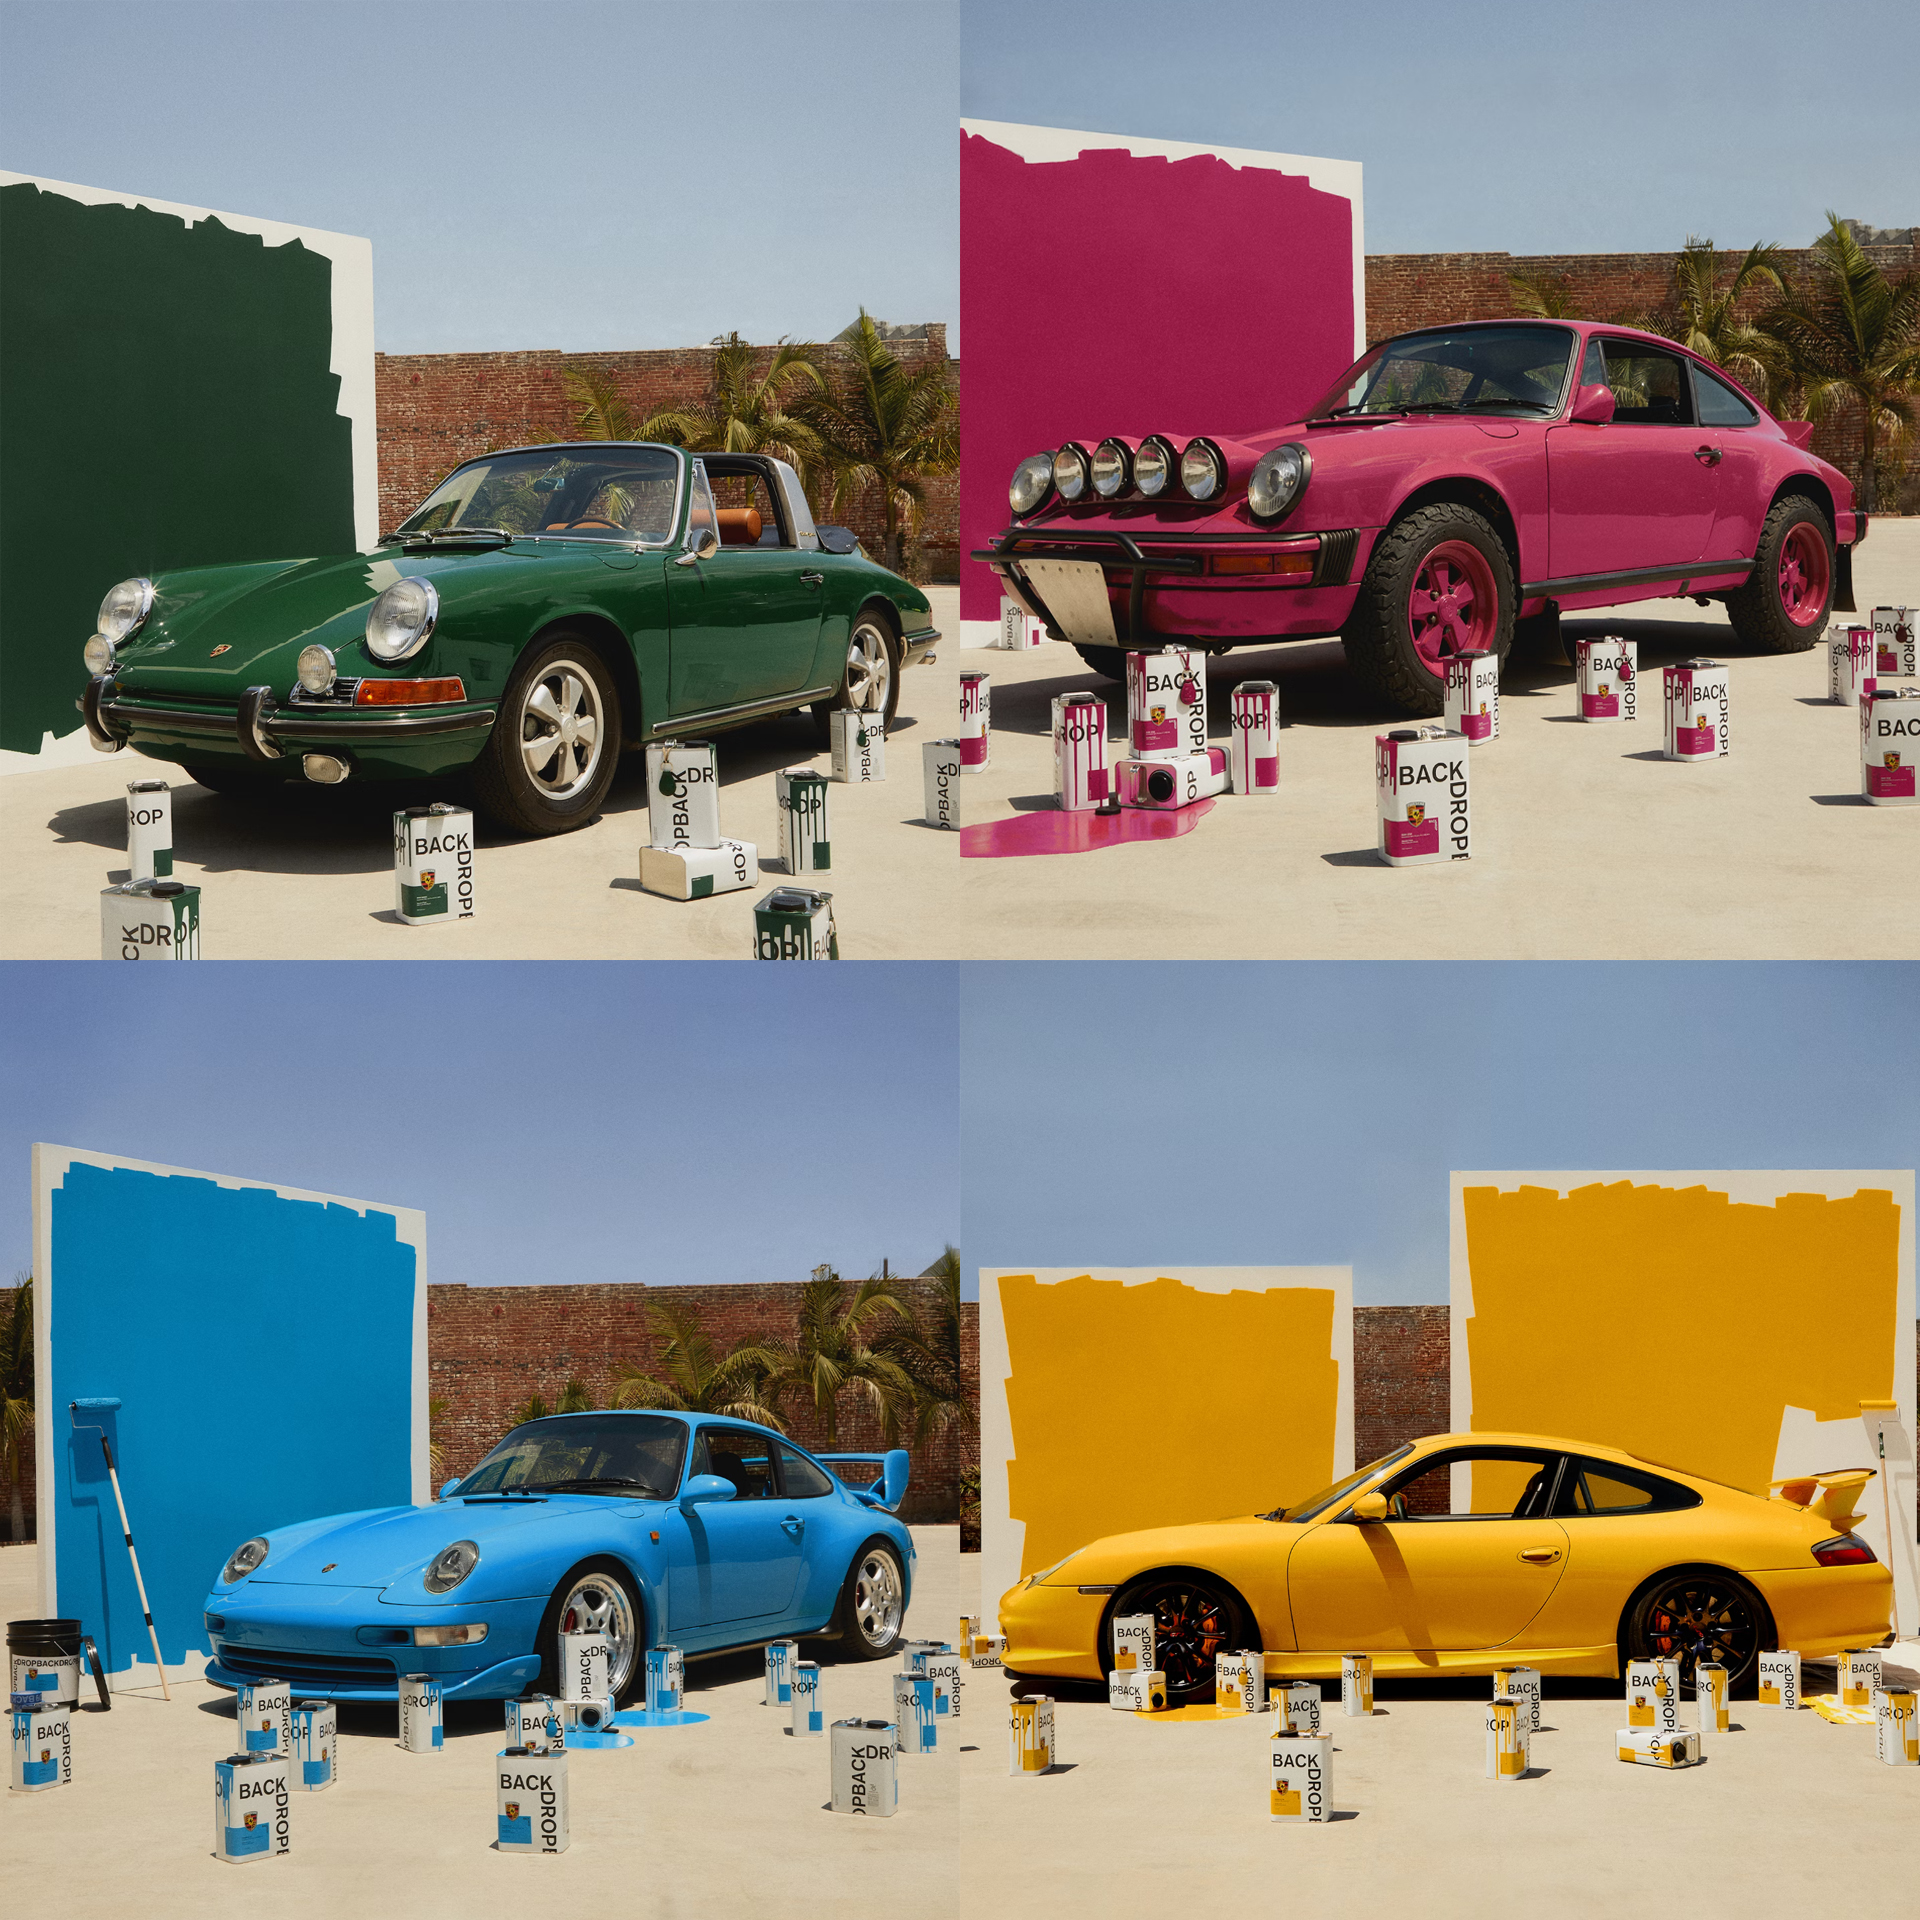 De fire fargene sammen med vakre matchende biler.